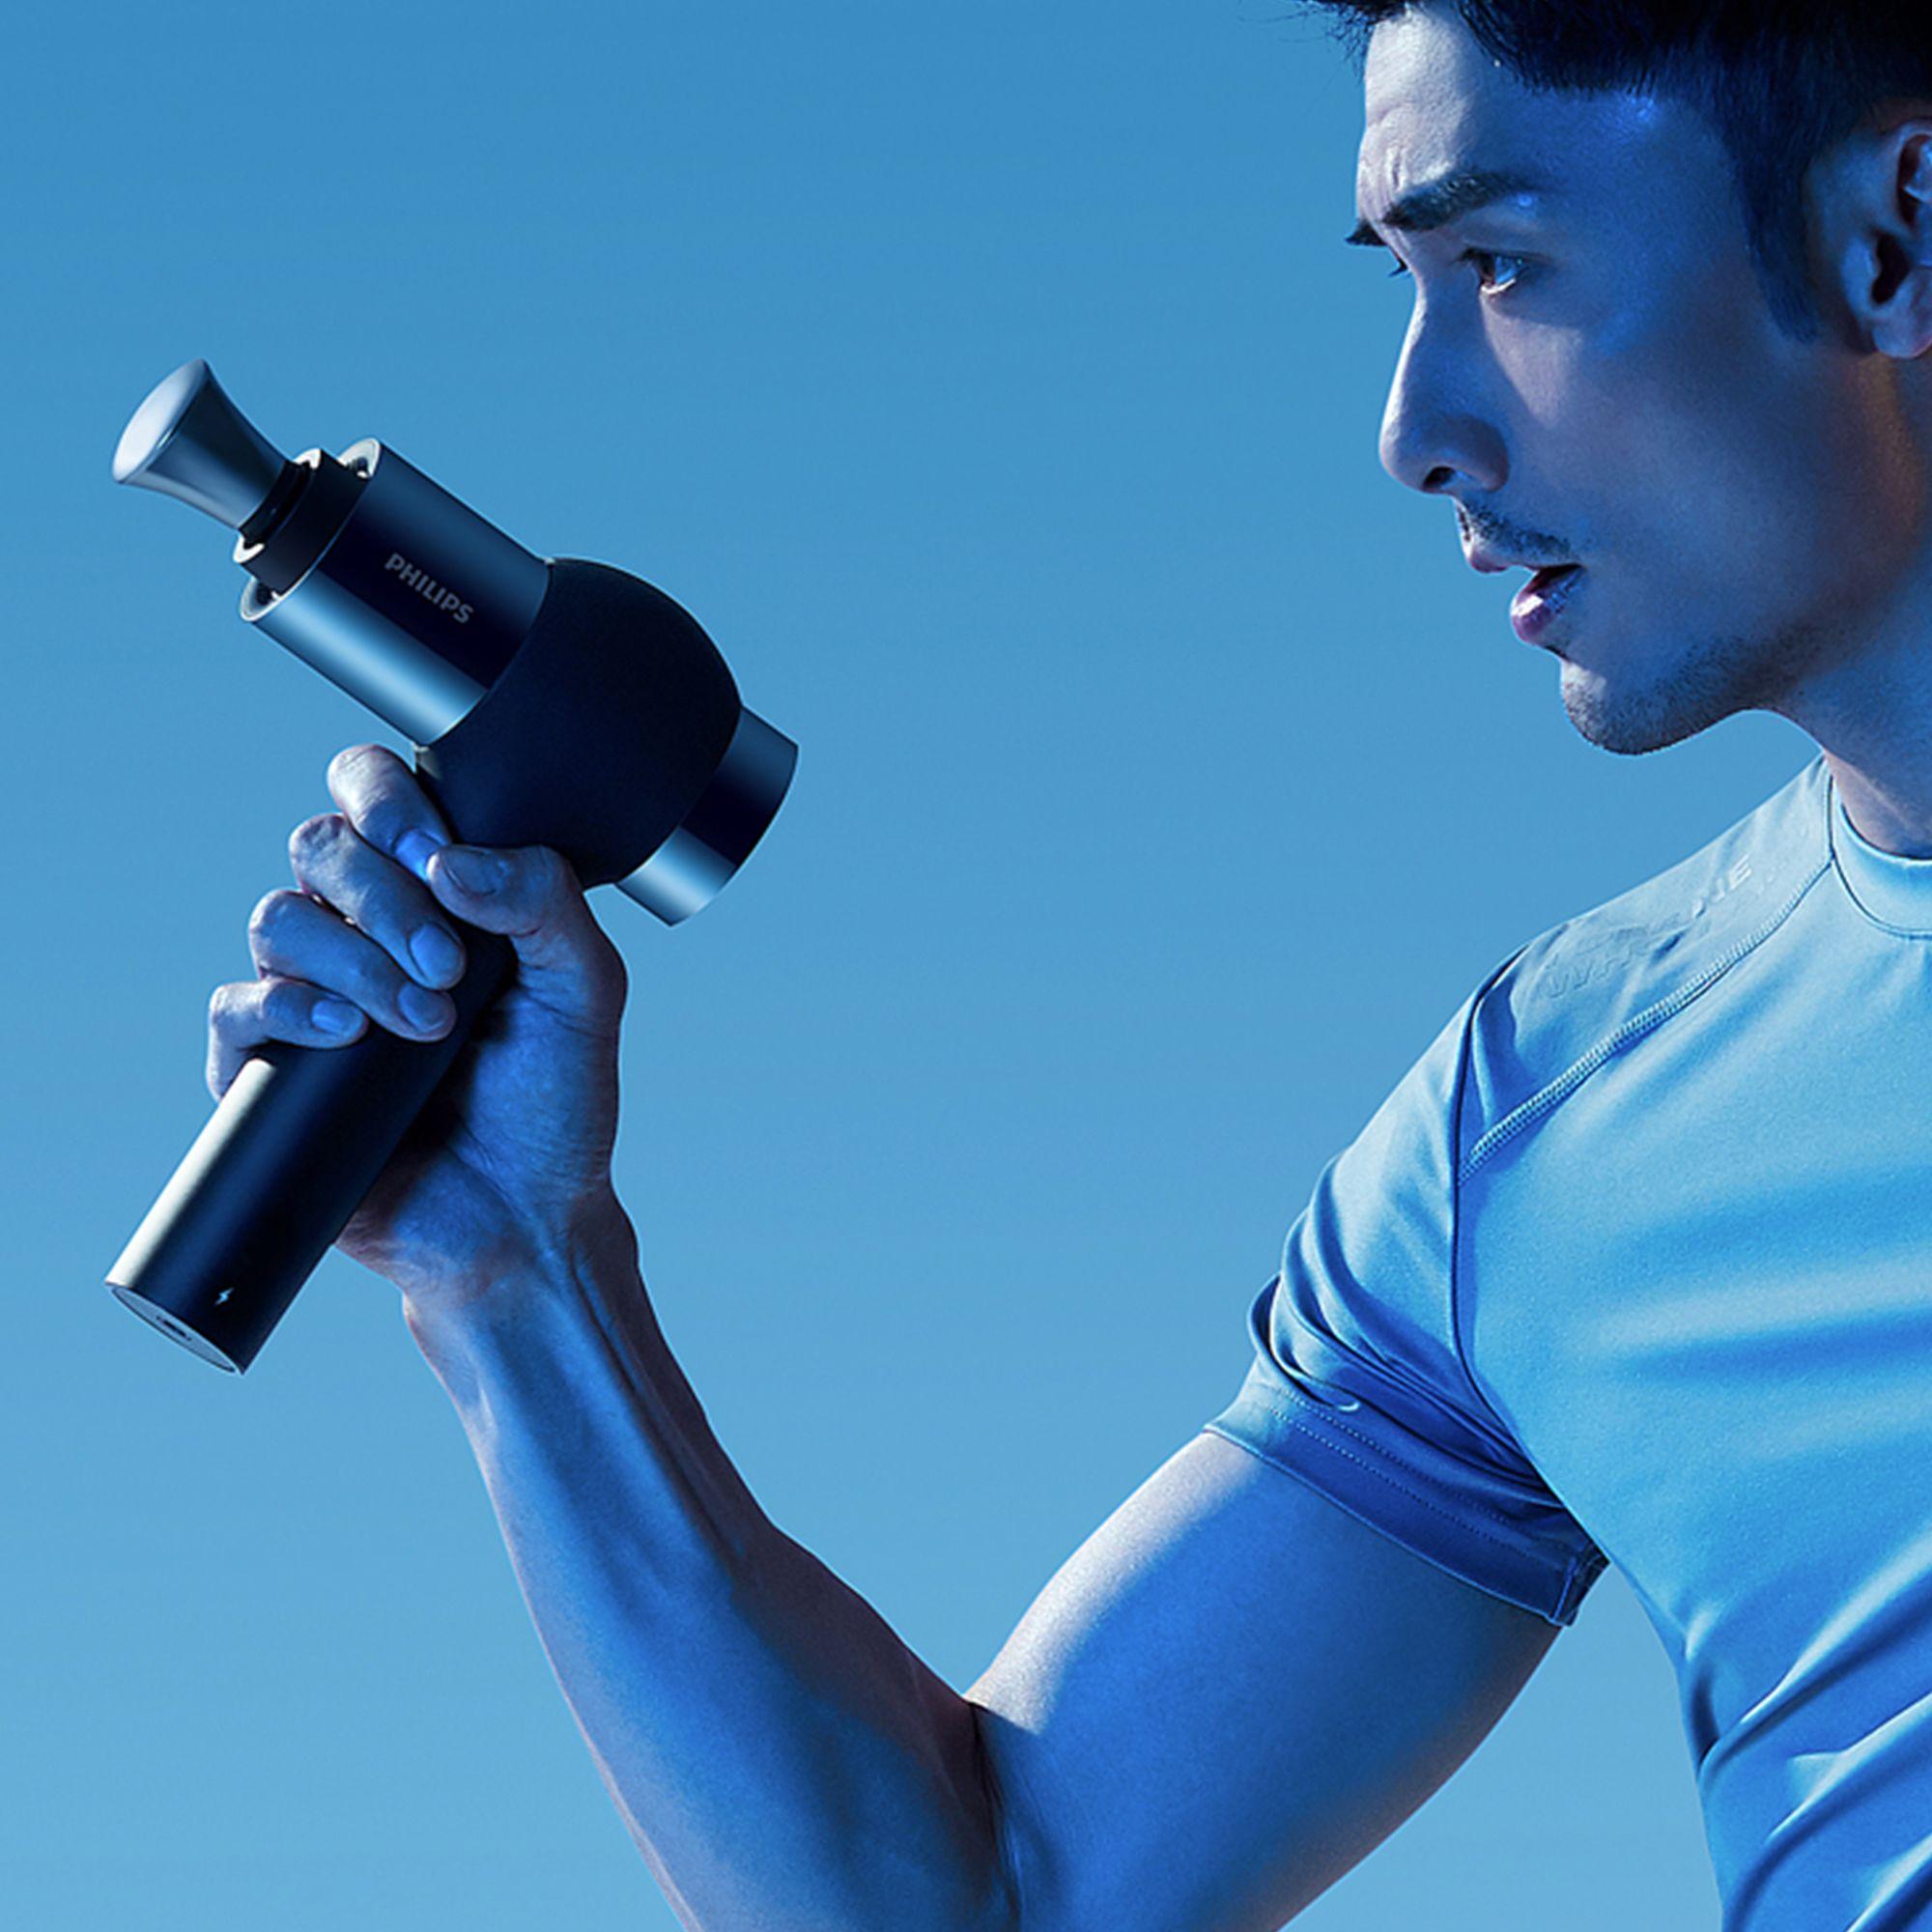 Philips Sports Massage Gun Pro Image 5